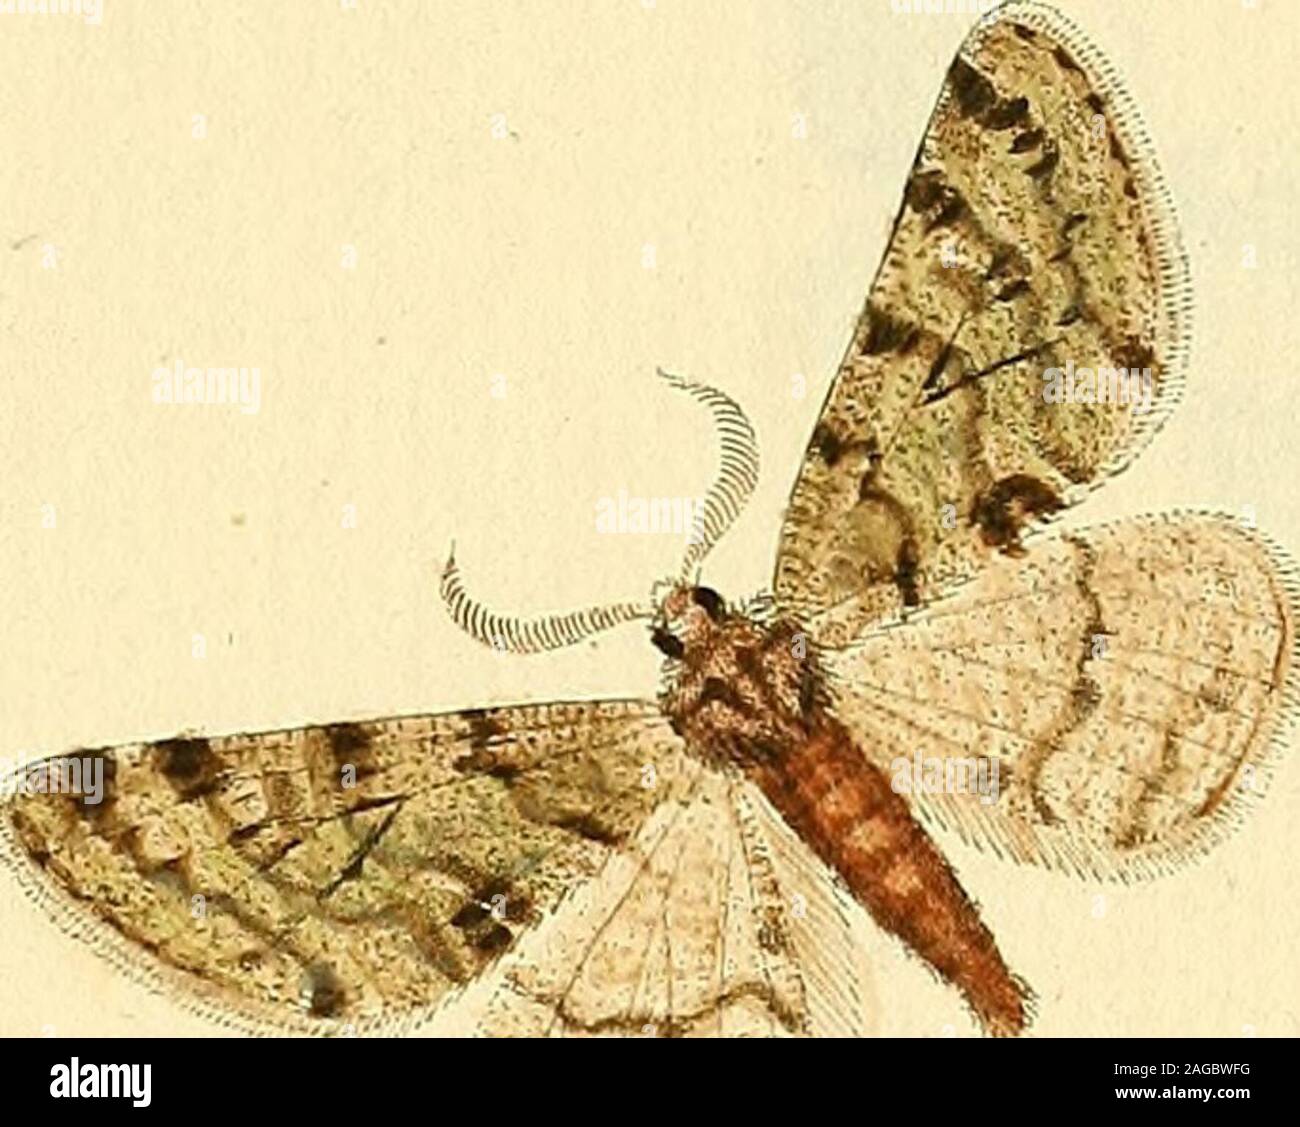 . Sammlung europscher Schmetterlinge, errichtet von Jacob Hner in Augsburg. 35. ^dffz^opz&rcz,, V. ^-^^7ne^?-&lt;z., JT. CyceOMC VOC£C^,- Ji.. -27-^ Stock Photo